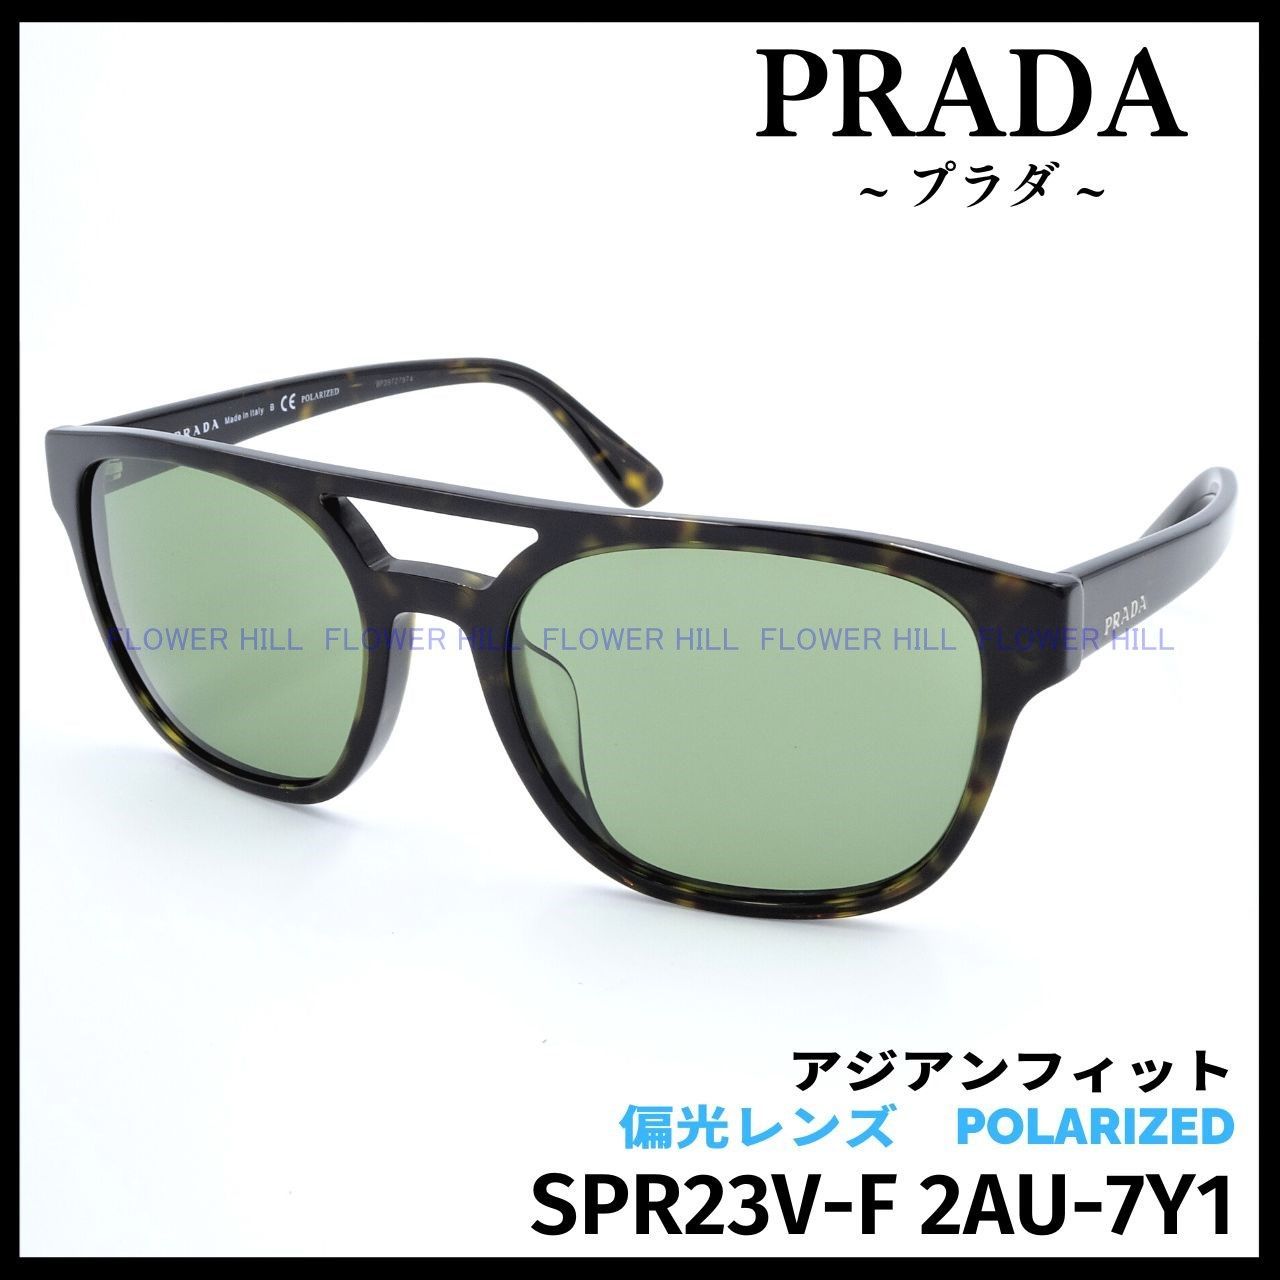 プラダ SPR23V-F 2AU 偏光サングラス ハバナ アジアンフィット ...